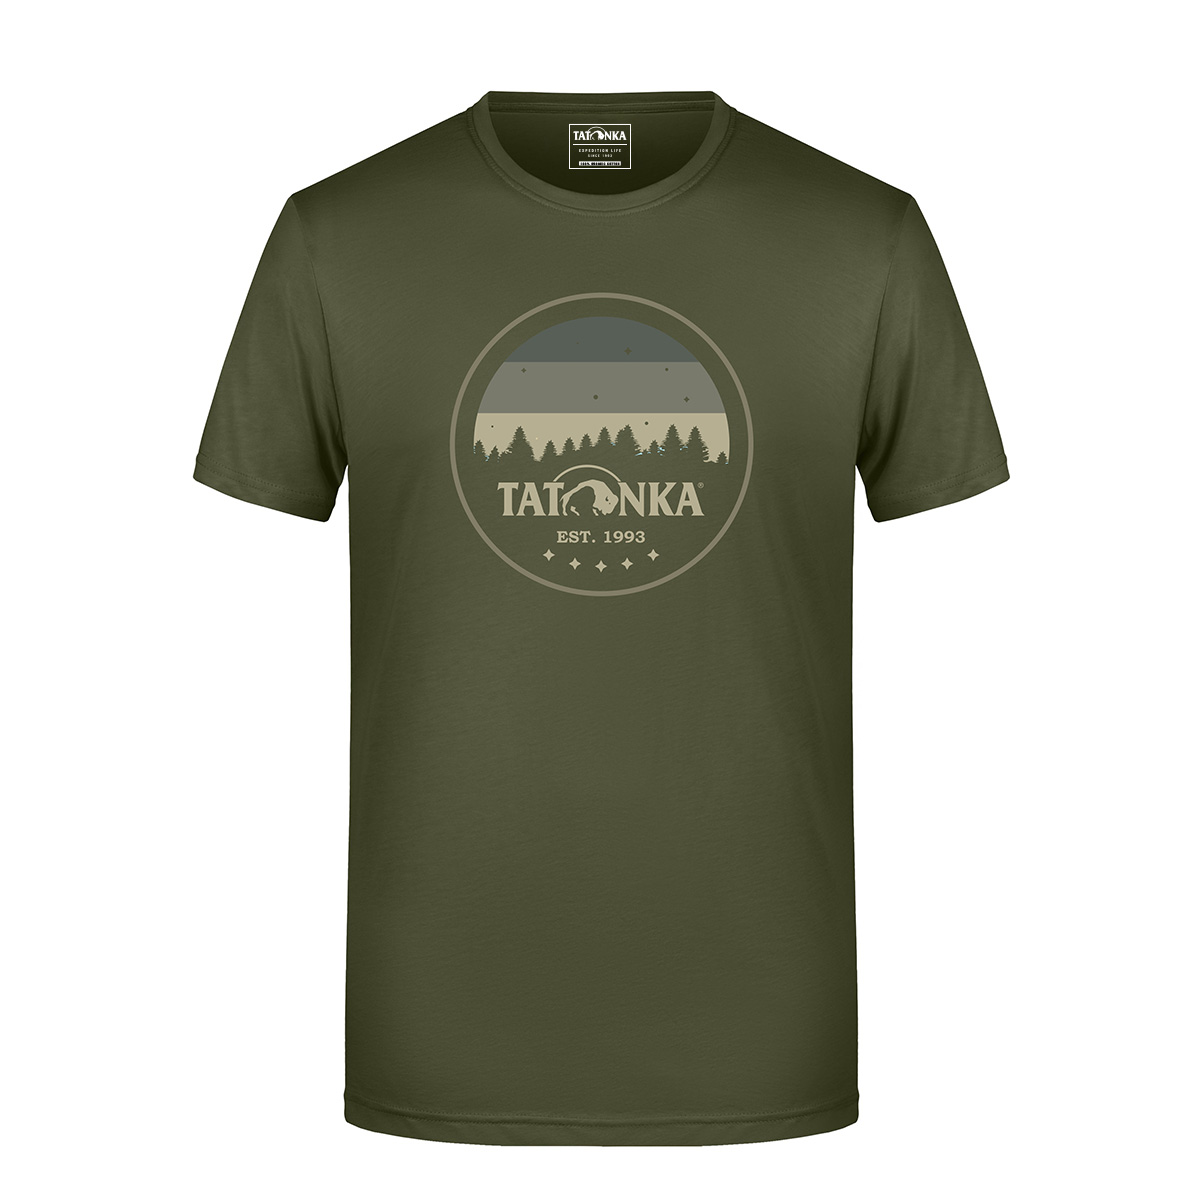 Tatonka Heritage T-Shirt Men olive grün T-Shirts 4013236375480